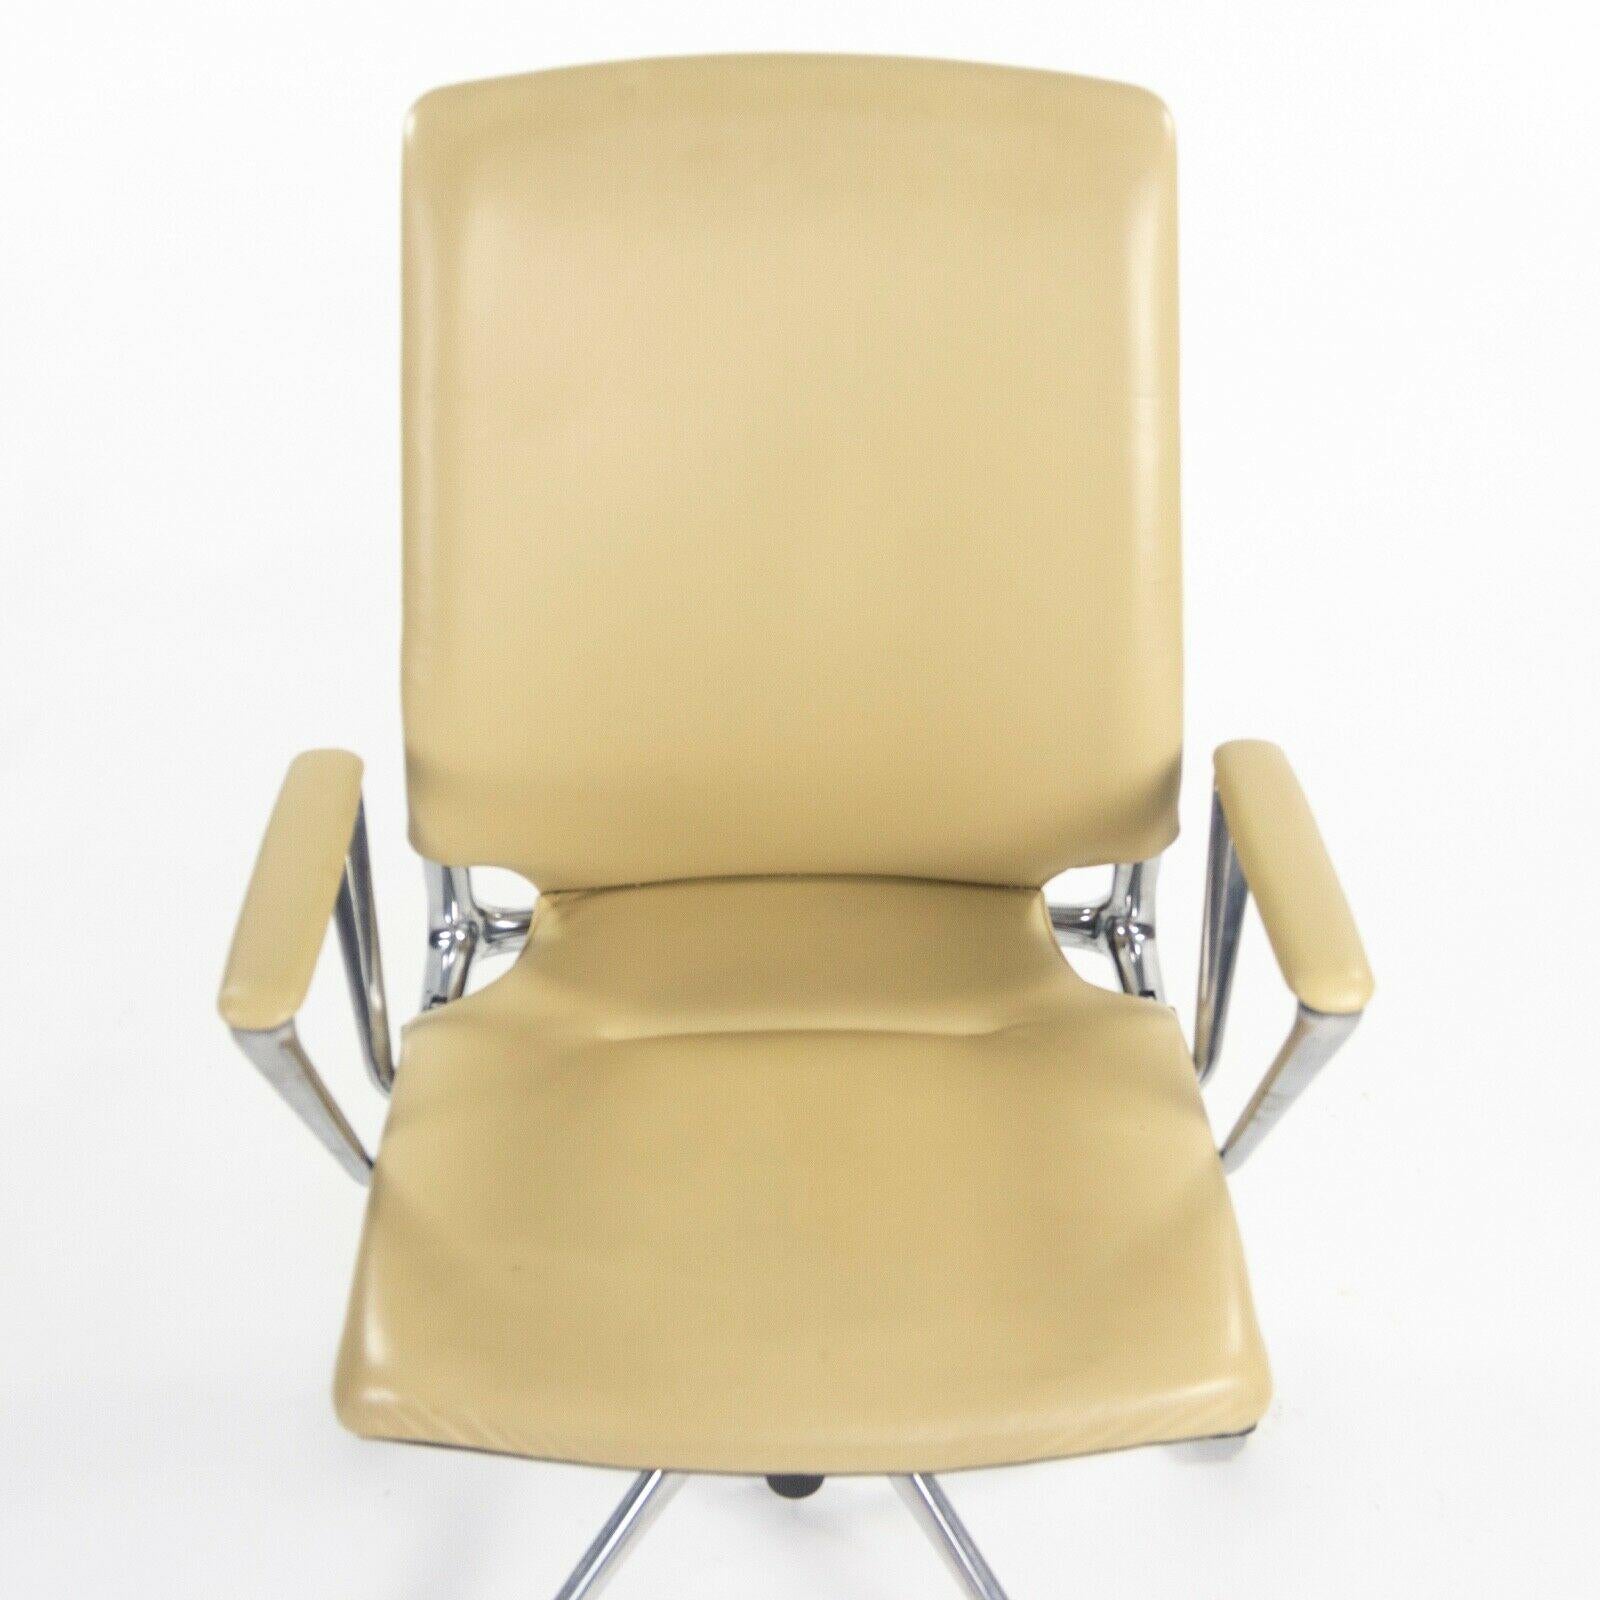 2011 Vitra Meda by Alberto Meda Desk Chair Tan Full Leather For Sale 4